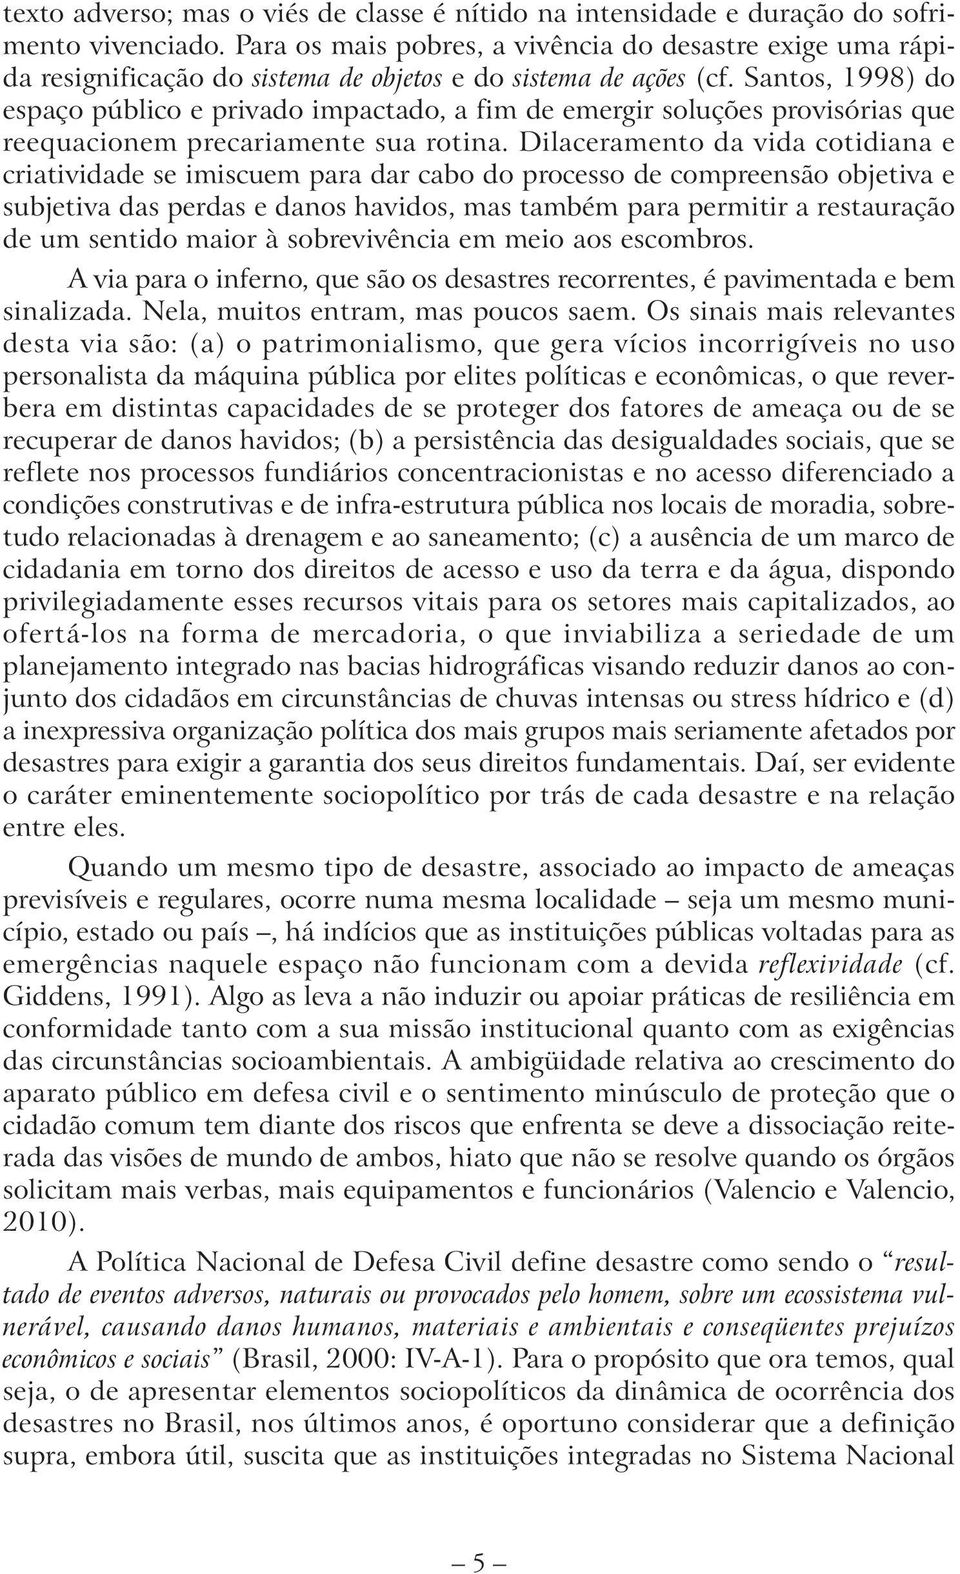 Santos, 1998) do espaço público e privado impactado, a fim de emergir soluções provisórias que reequacionem precariamente sua rotina.